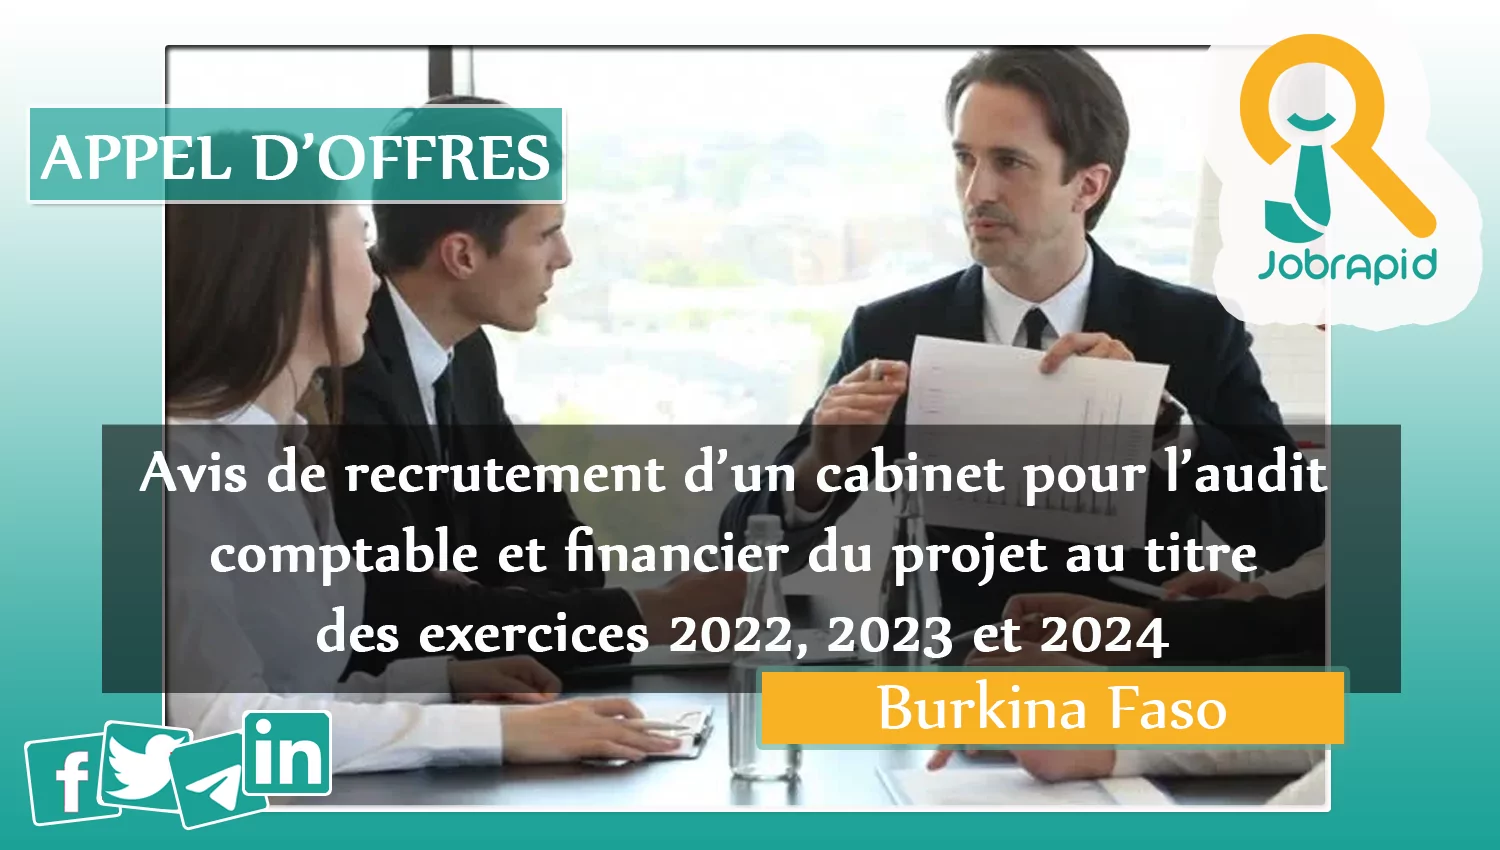 Avis de recrutement d’un cabinet pour l’audit comptable et financier du projet au titre des exercices 2022, 2023 et 2024, Burkina Faso